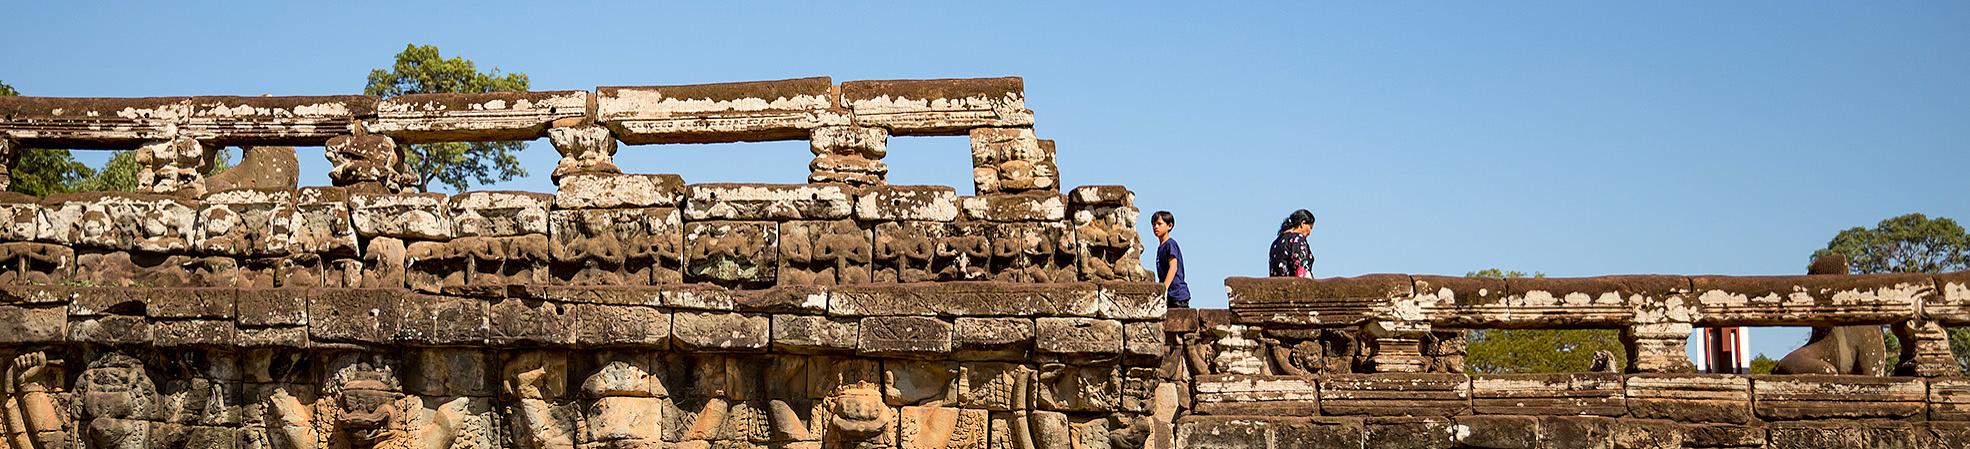 Travel Guide of Angkor Ruins